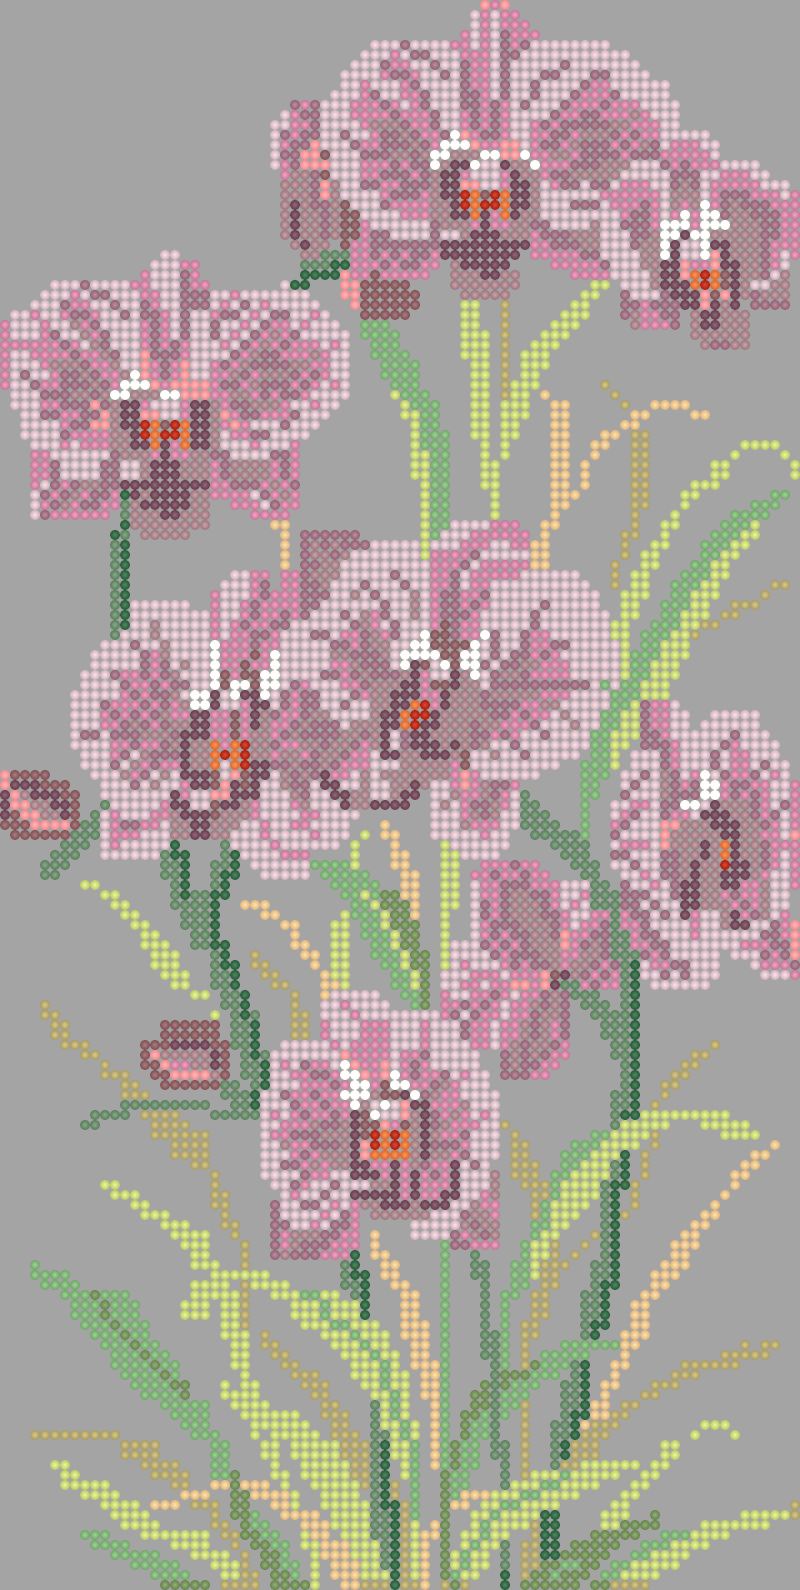 Схема вышивки цветов 'Орхидеи' - схема вышивки бисером Елены Ивановой для бесплатного скачивания